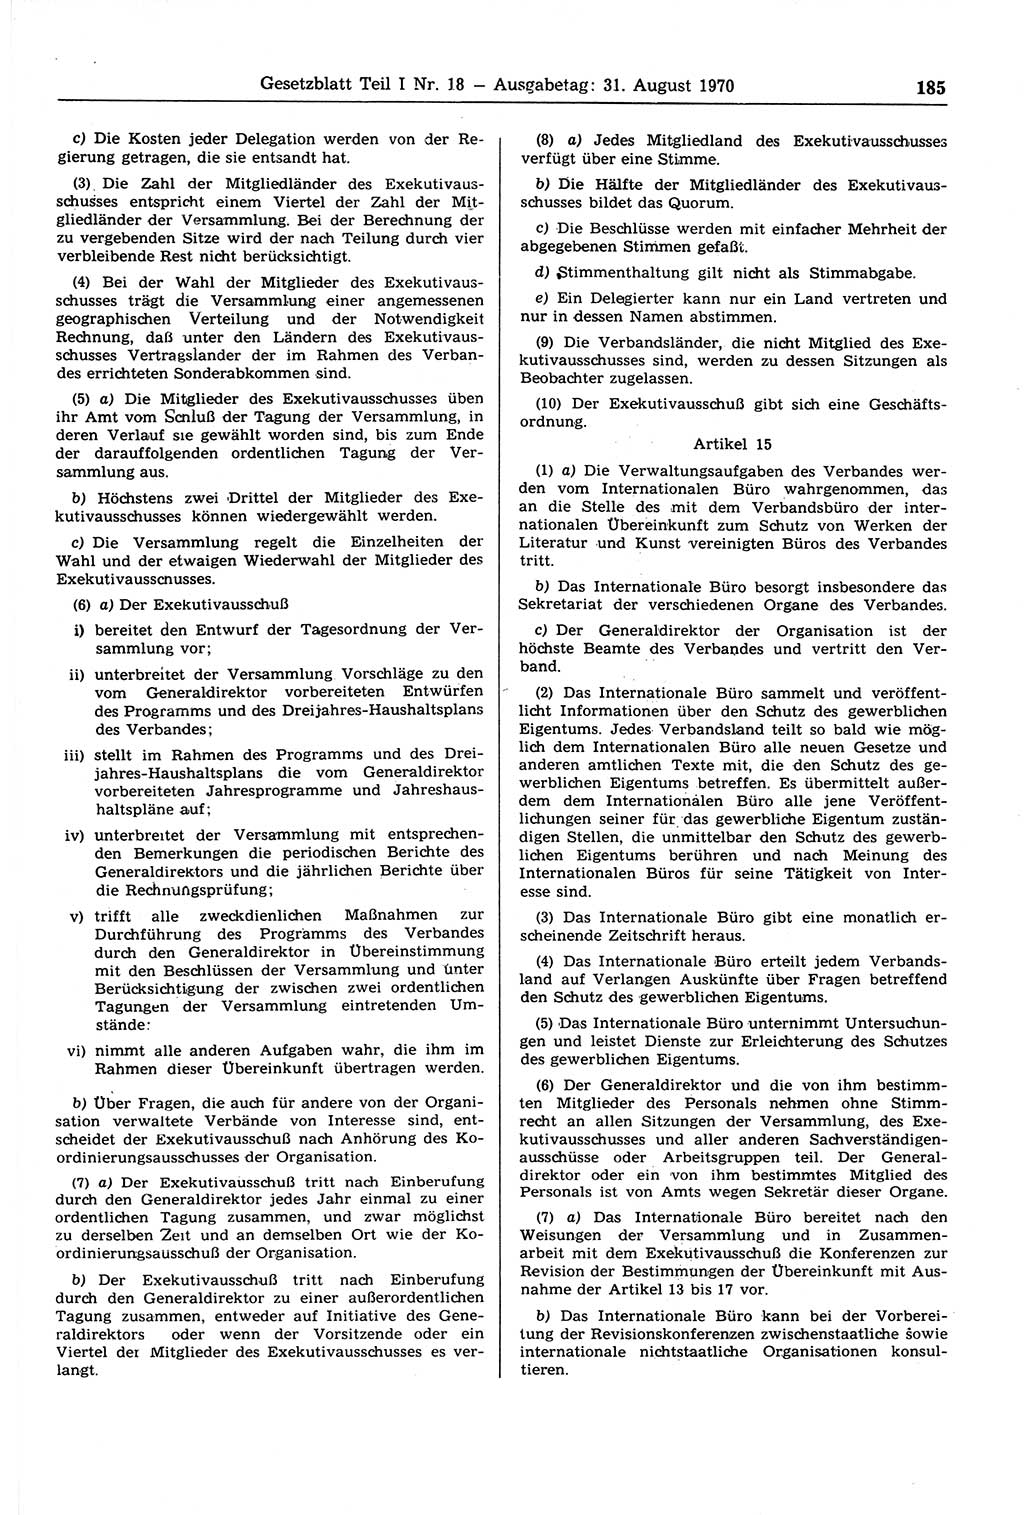 Gesetzblatt (GBl.) der Deutschen Demokratischen Republik (DDR) Teil Ⅰ 1970, Seite 185 (GBl. DDR Ⅰ 1970, S. 185)